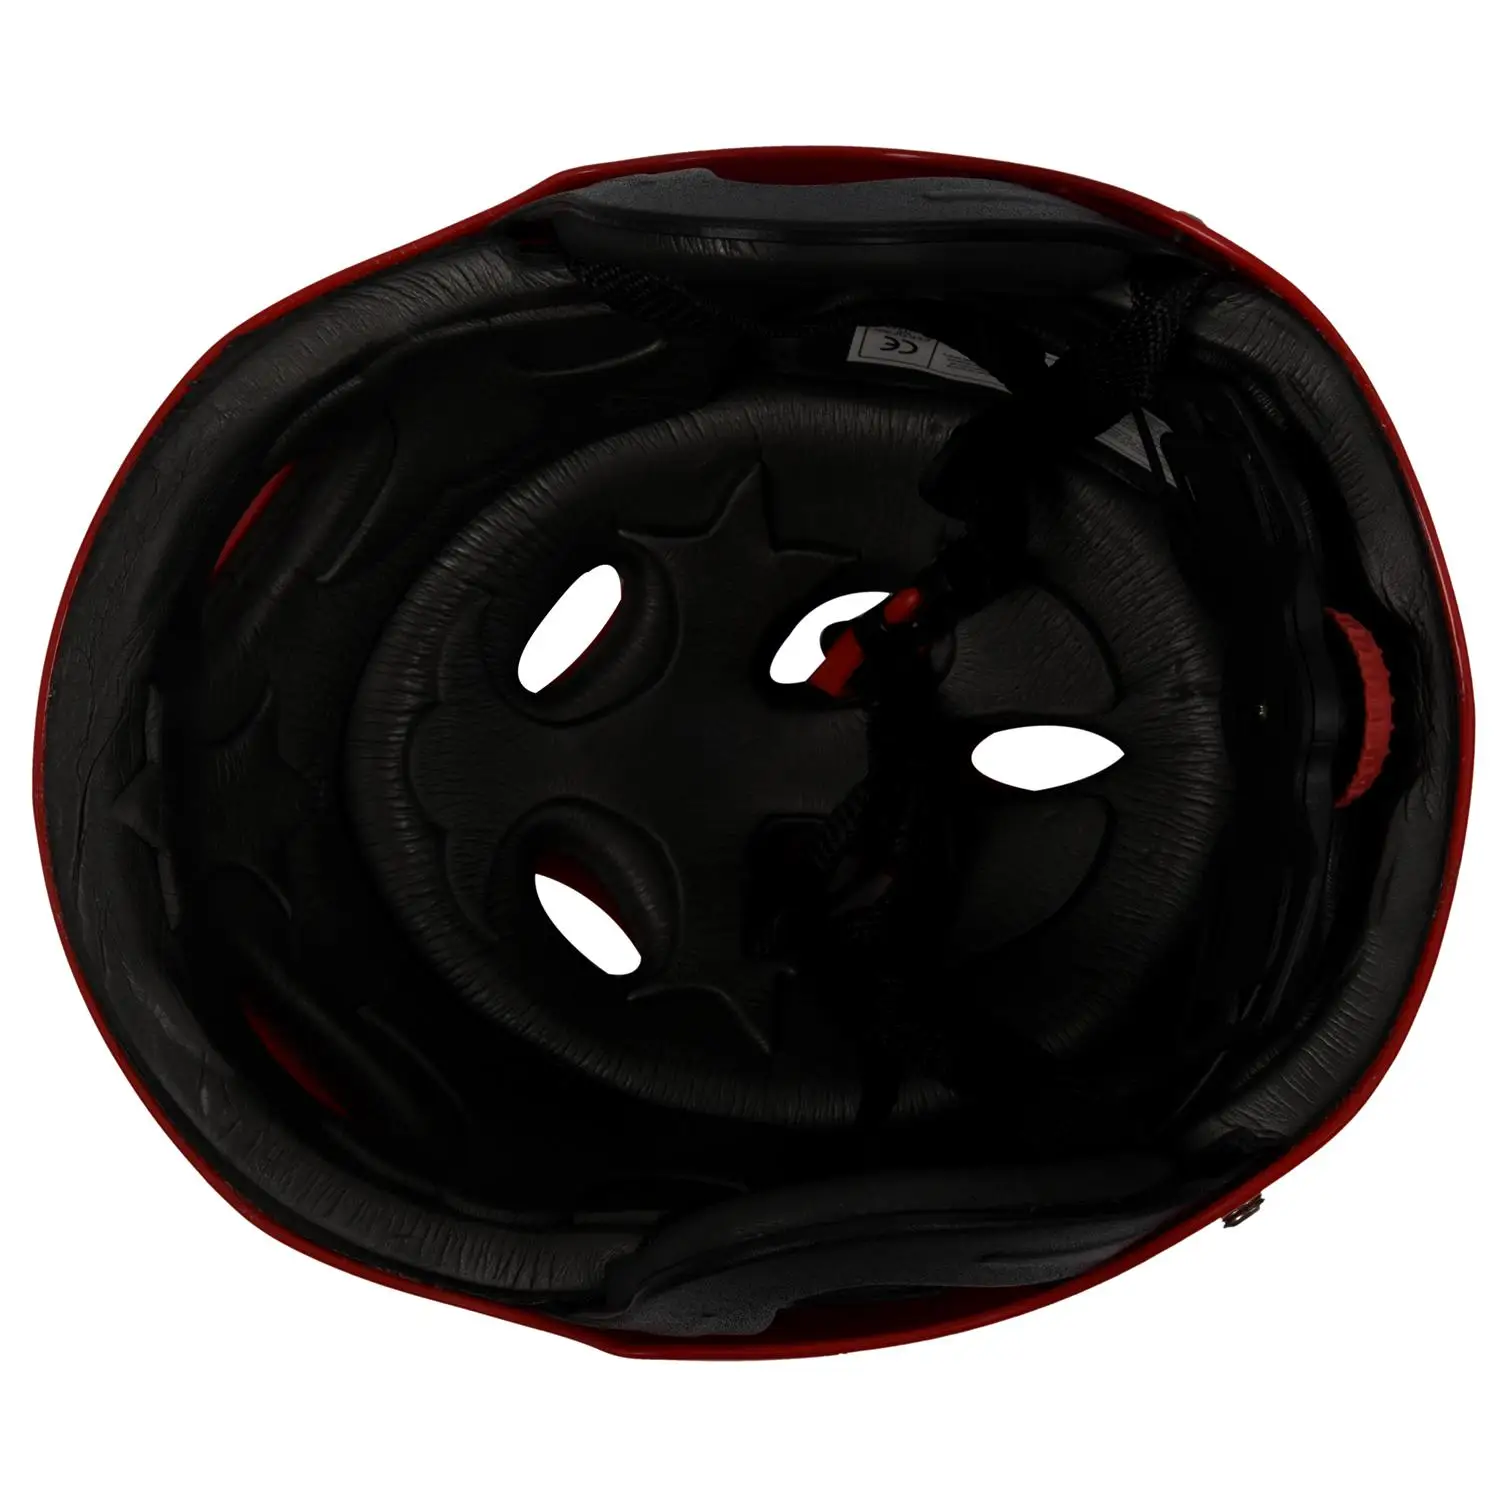 Защитный шлем с 11 дыхательными отверстиями для водных видов спорта Каяк Каноэ Гребля для серфинга - Красный - 2